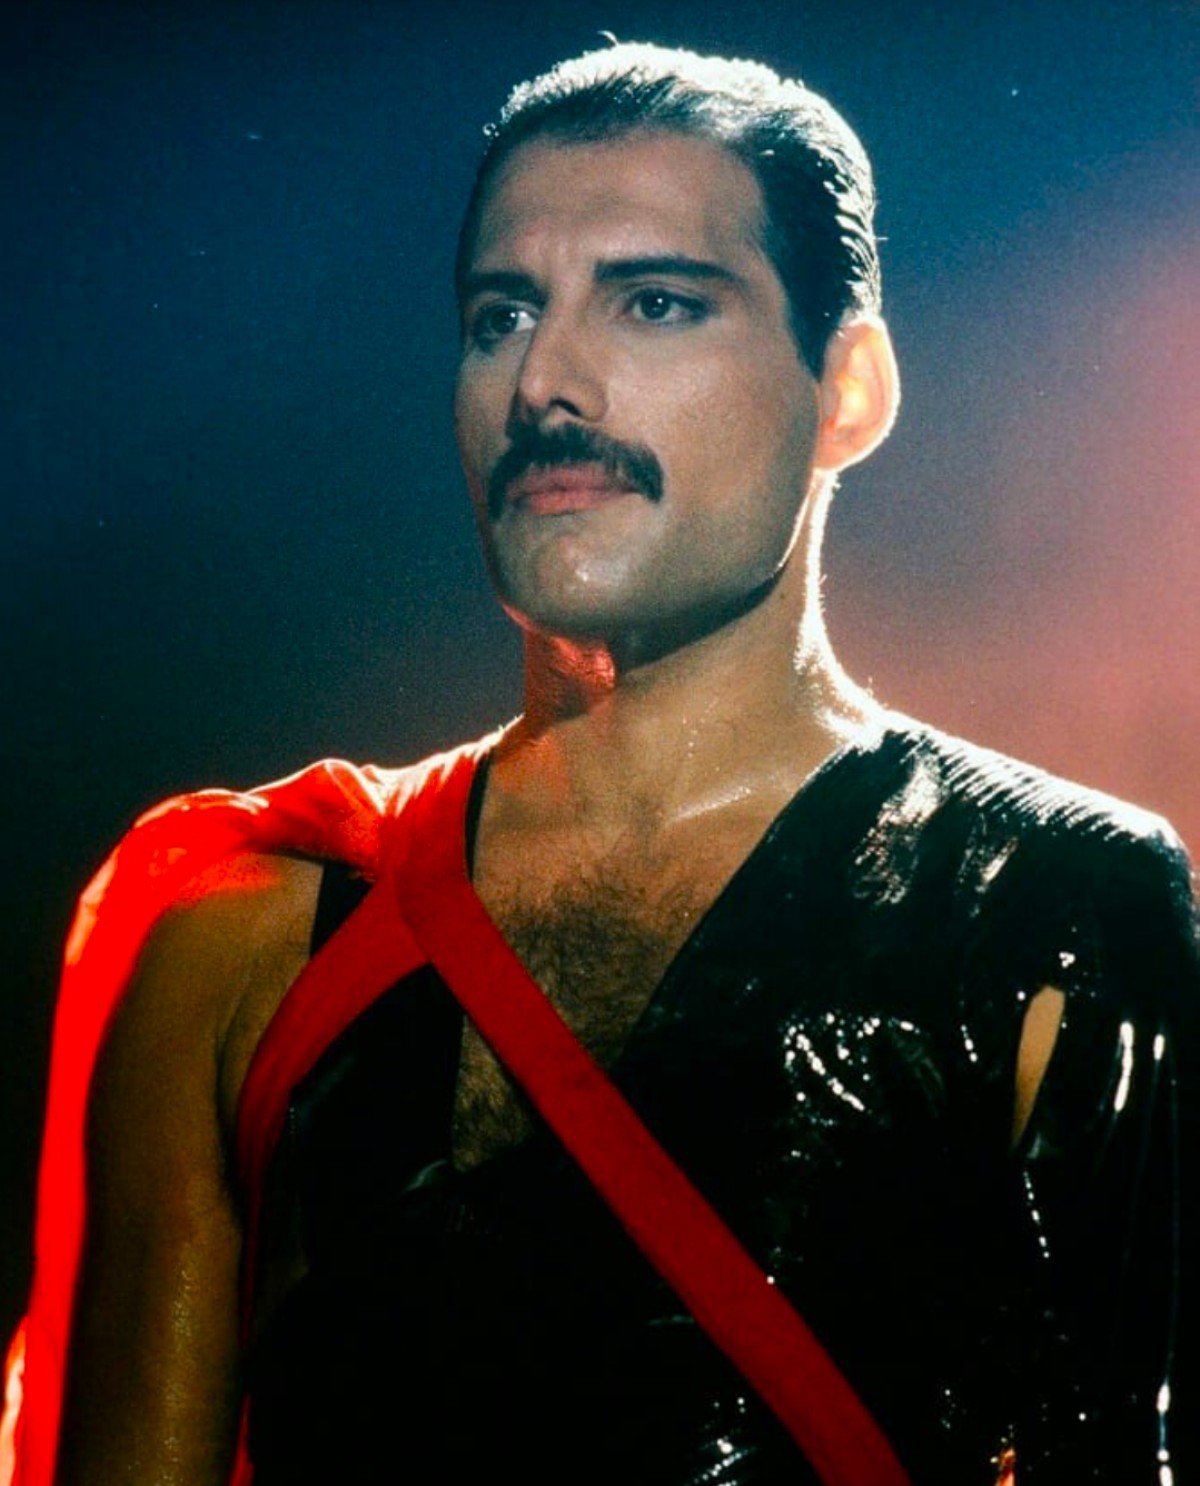 Amazing Freddie Mercury...